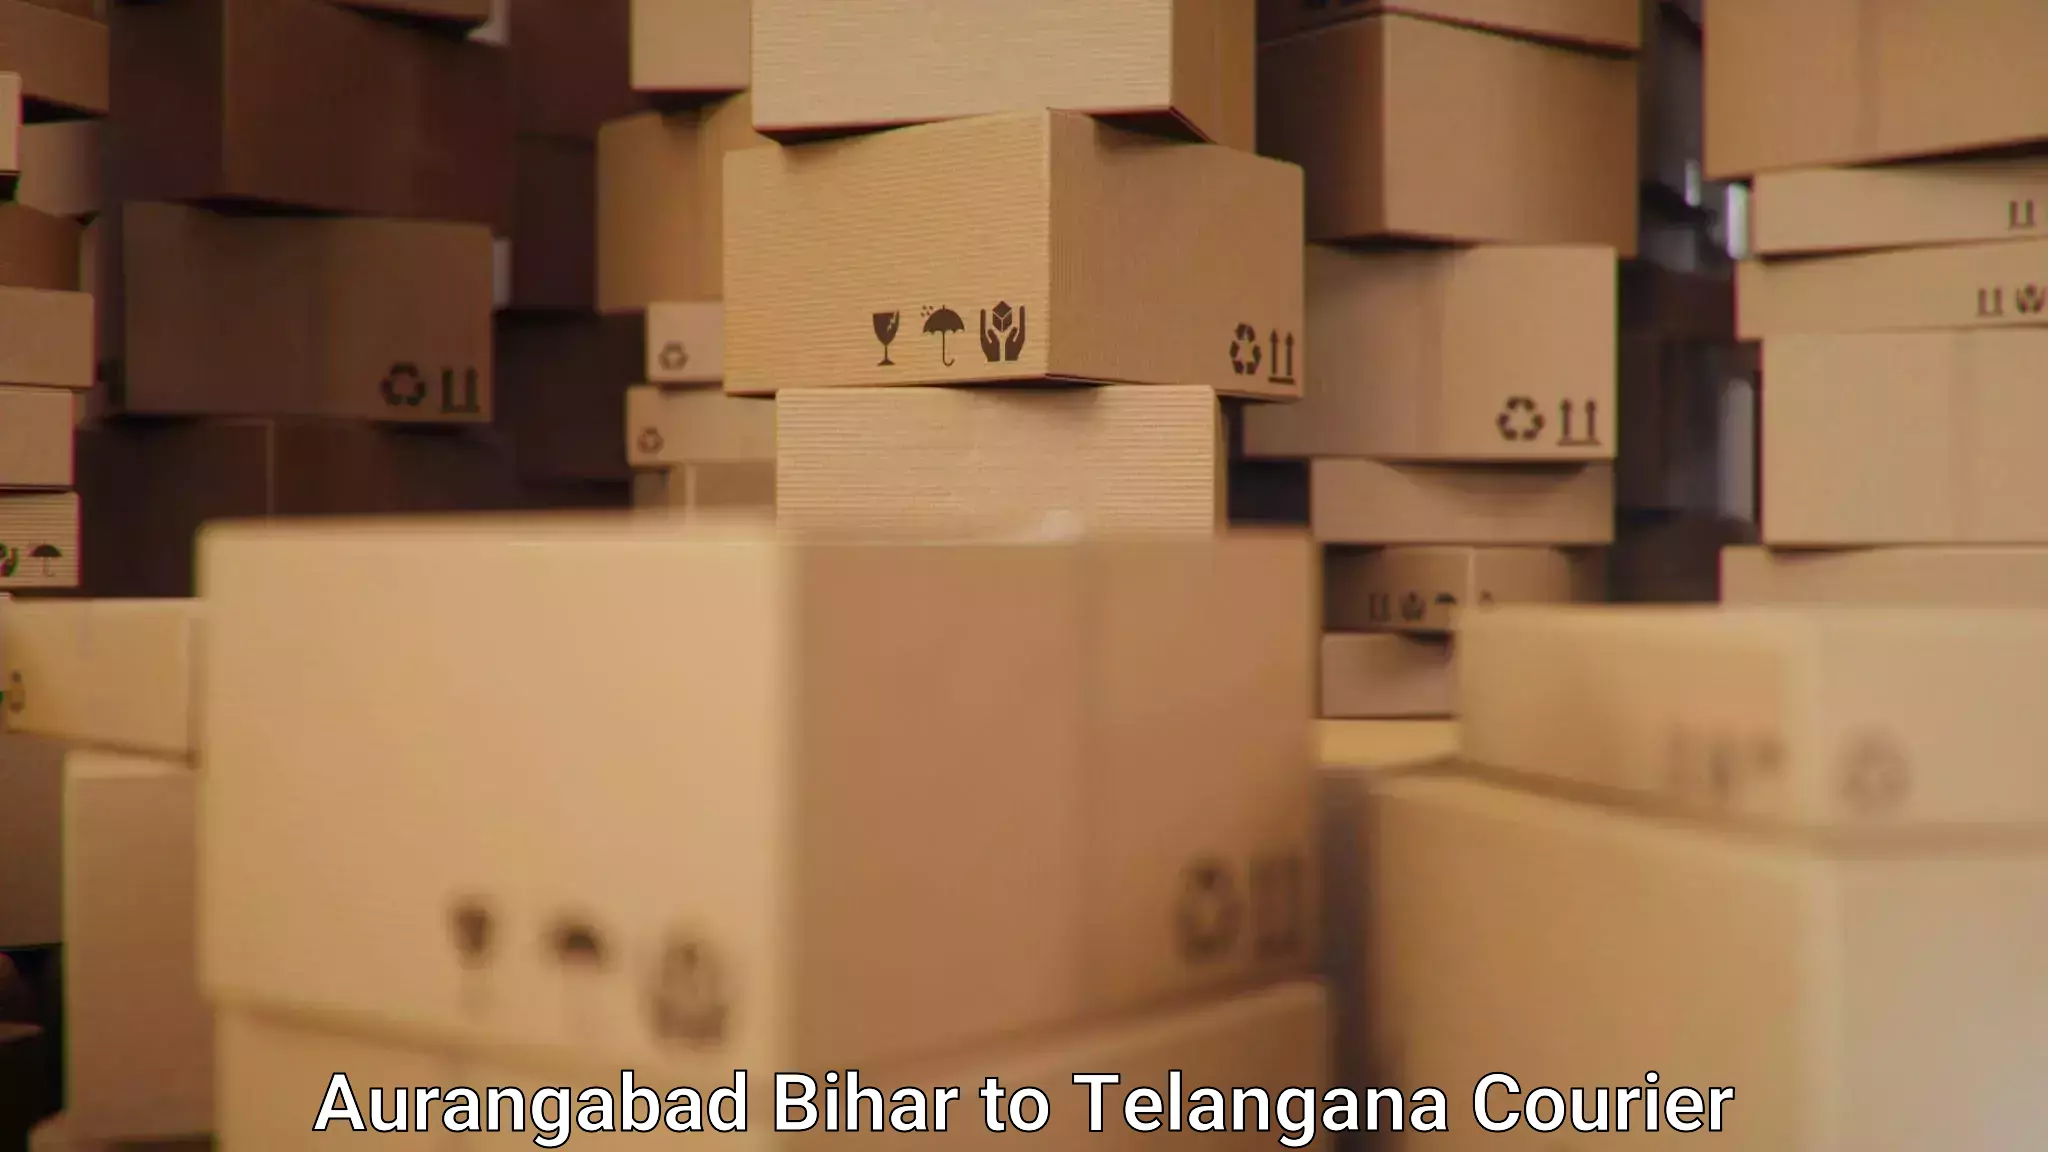 Flexible delivery scheduling Aurangabad Bihar to Tallada